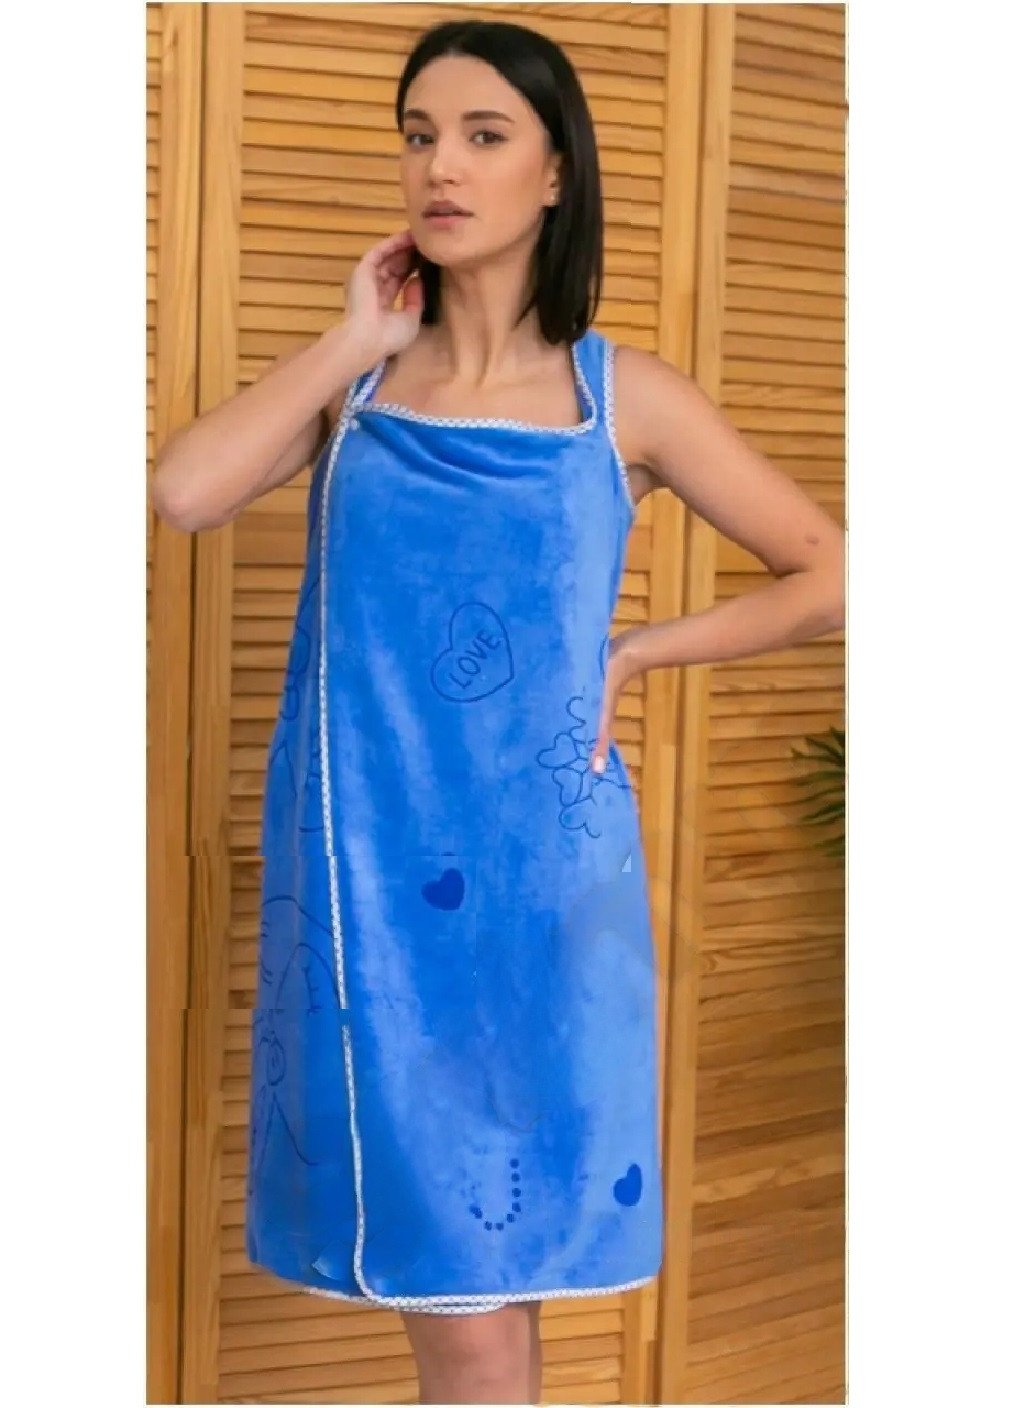 Unbranded рушник халат для лазні сауни для тіла мікрофібра вбирає воду зберігає тепло 135х80 см (474786-prob) синій малюнок синій виробництво -